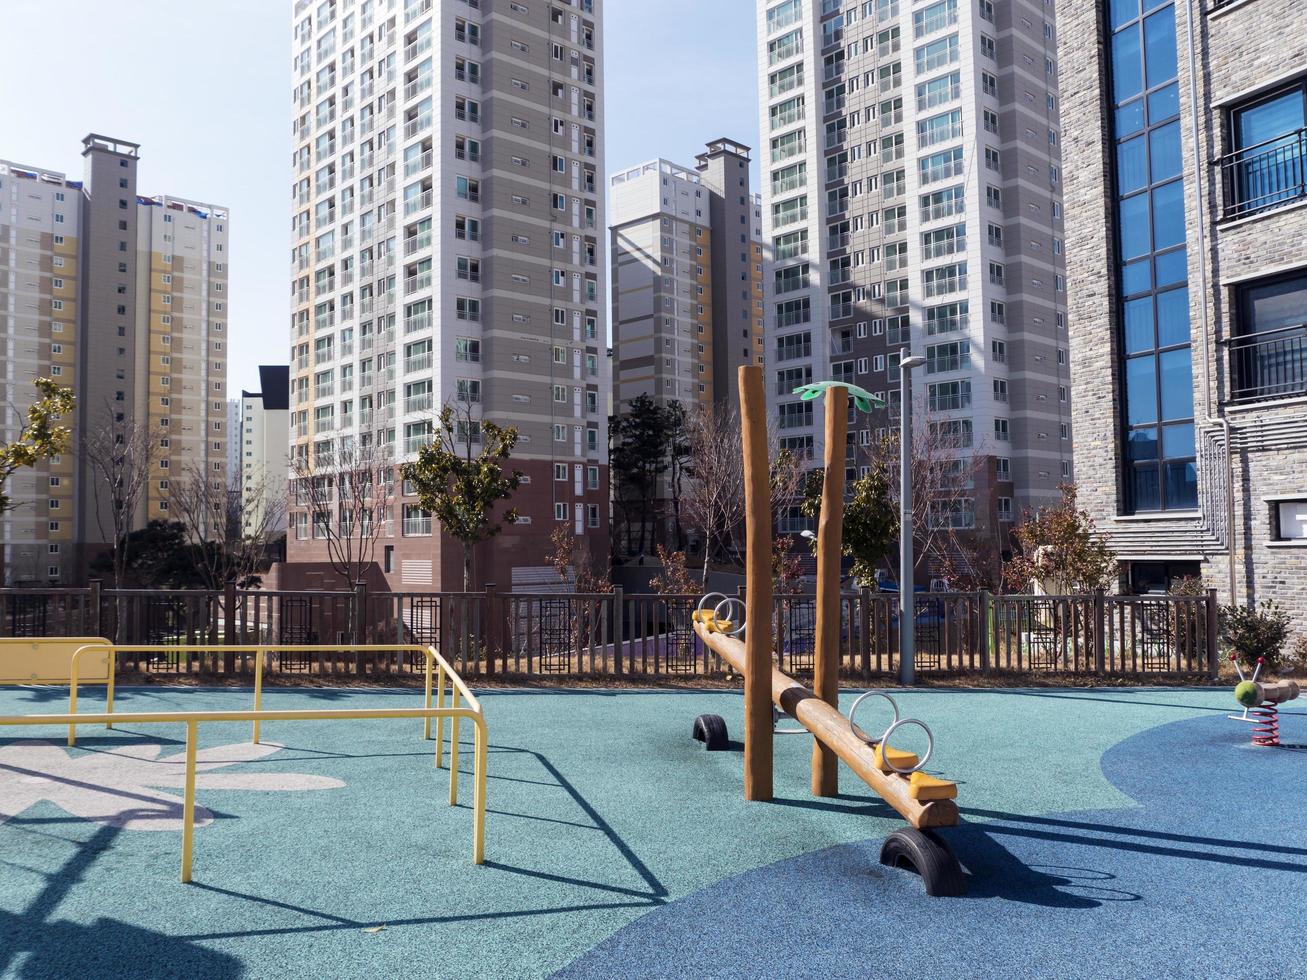 le terrain de jeu pour les enfants et les grands bâtiments dans le quartier riche de la ville de Yeosu. Corée du Sud photo